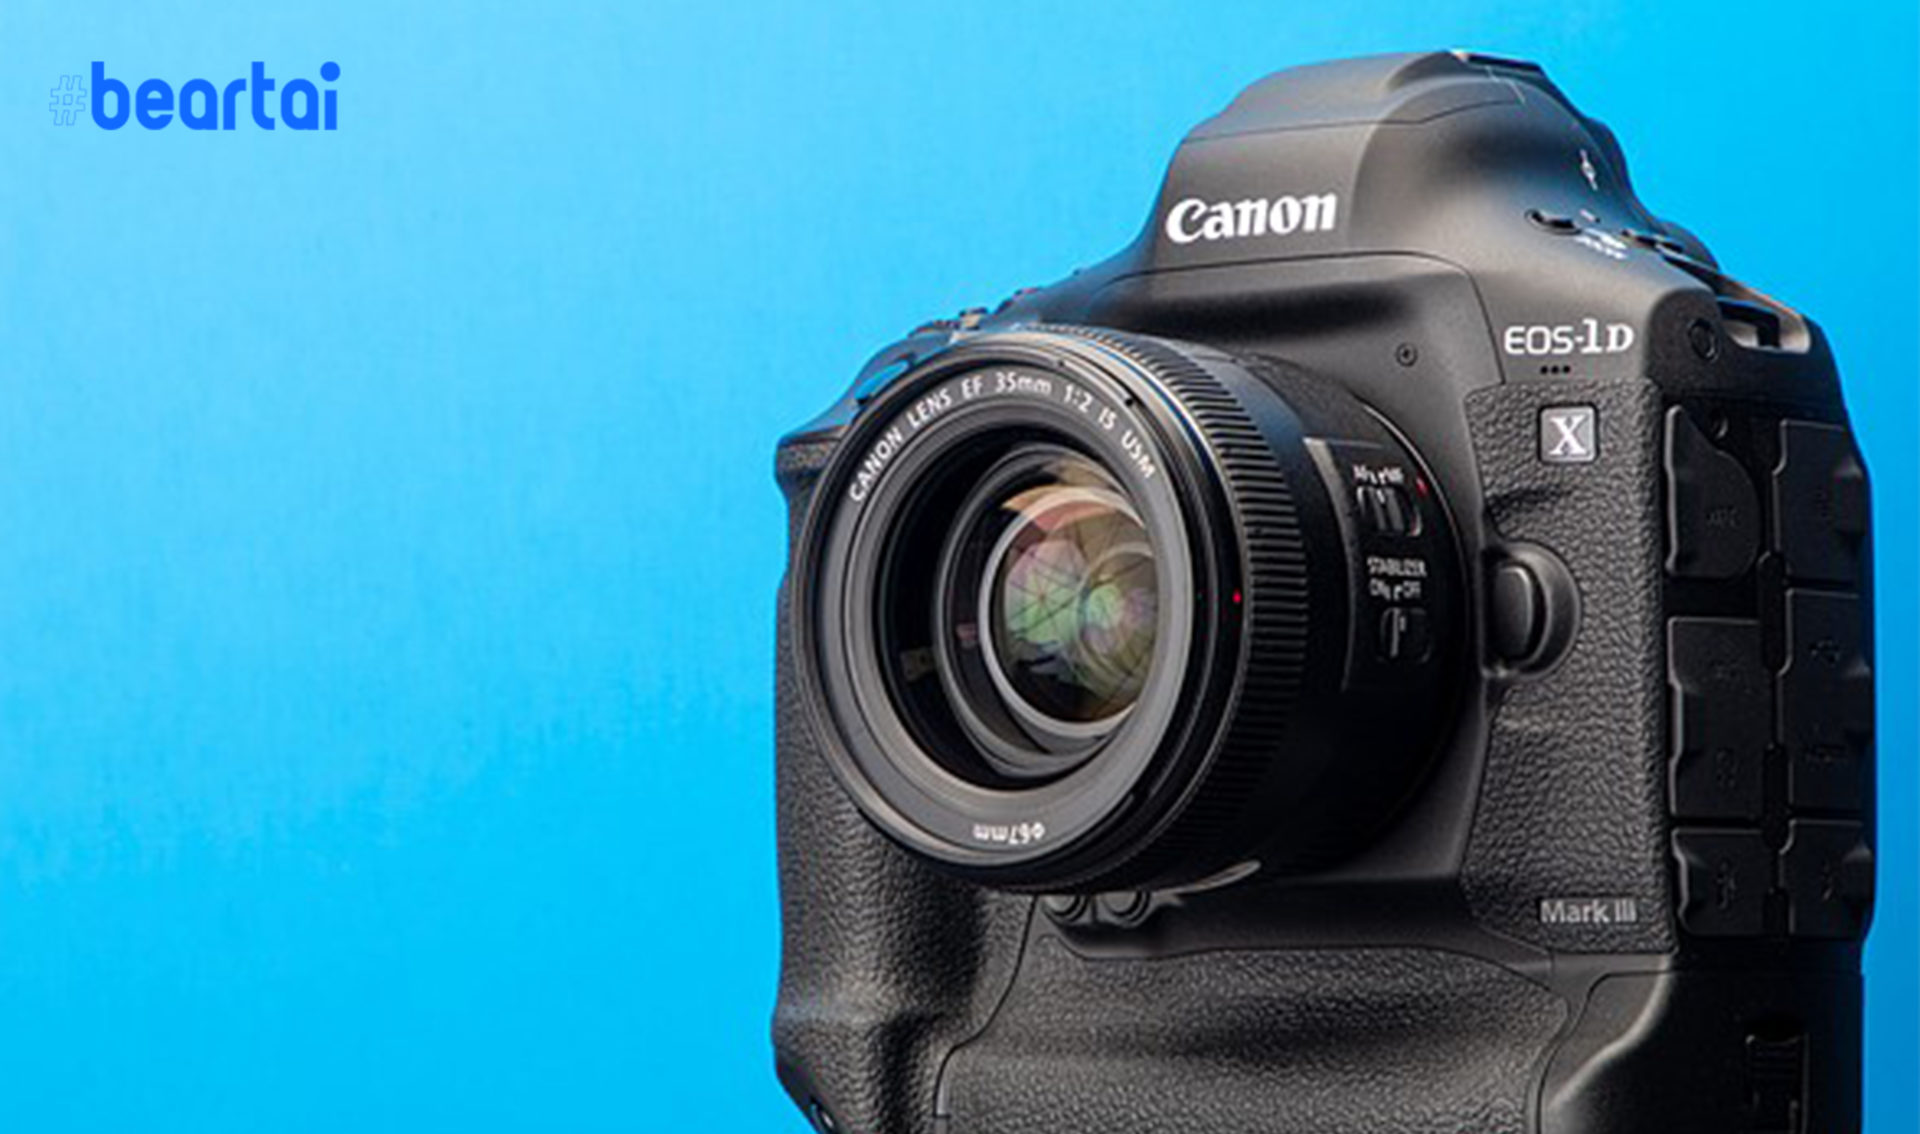 หลบไปรุ่นใหญ่มาแล้ว Canon เปิดตัว EOS-1D X Mark III มาพร้อมเซนเซอร์ใหม่ รองรับการถ่ายวิดีโอ RAW ถึง 5.5K